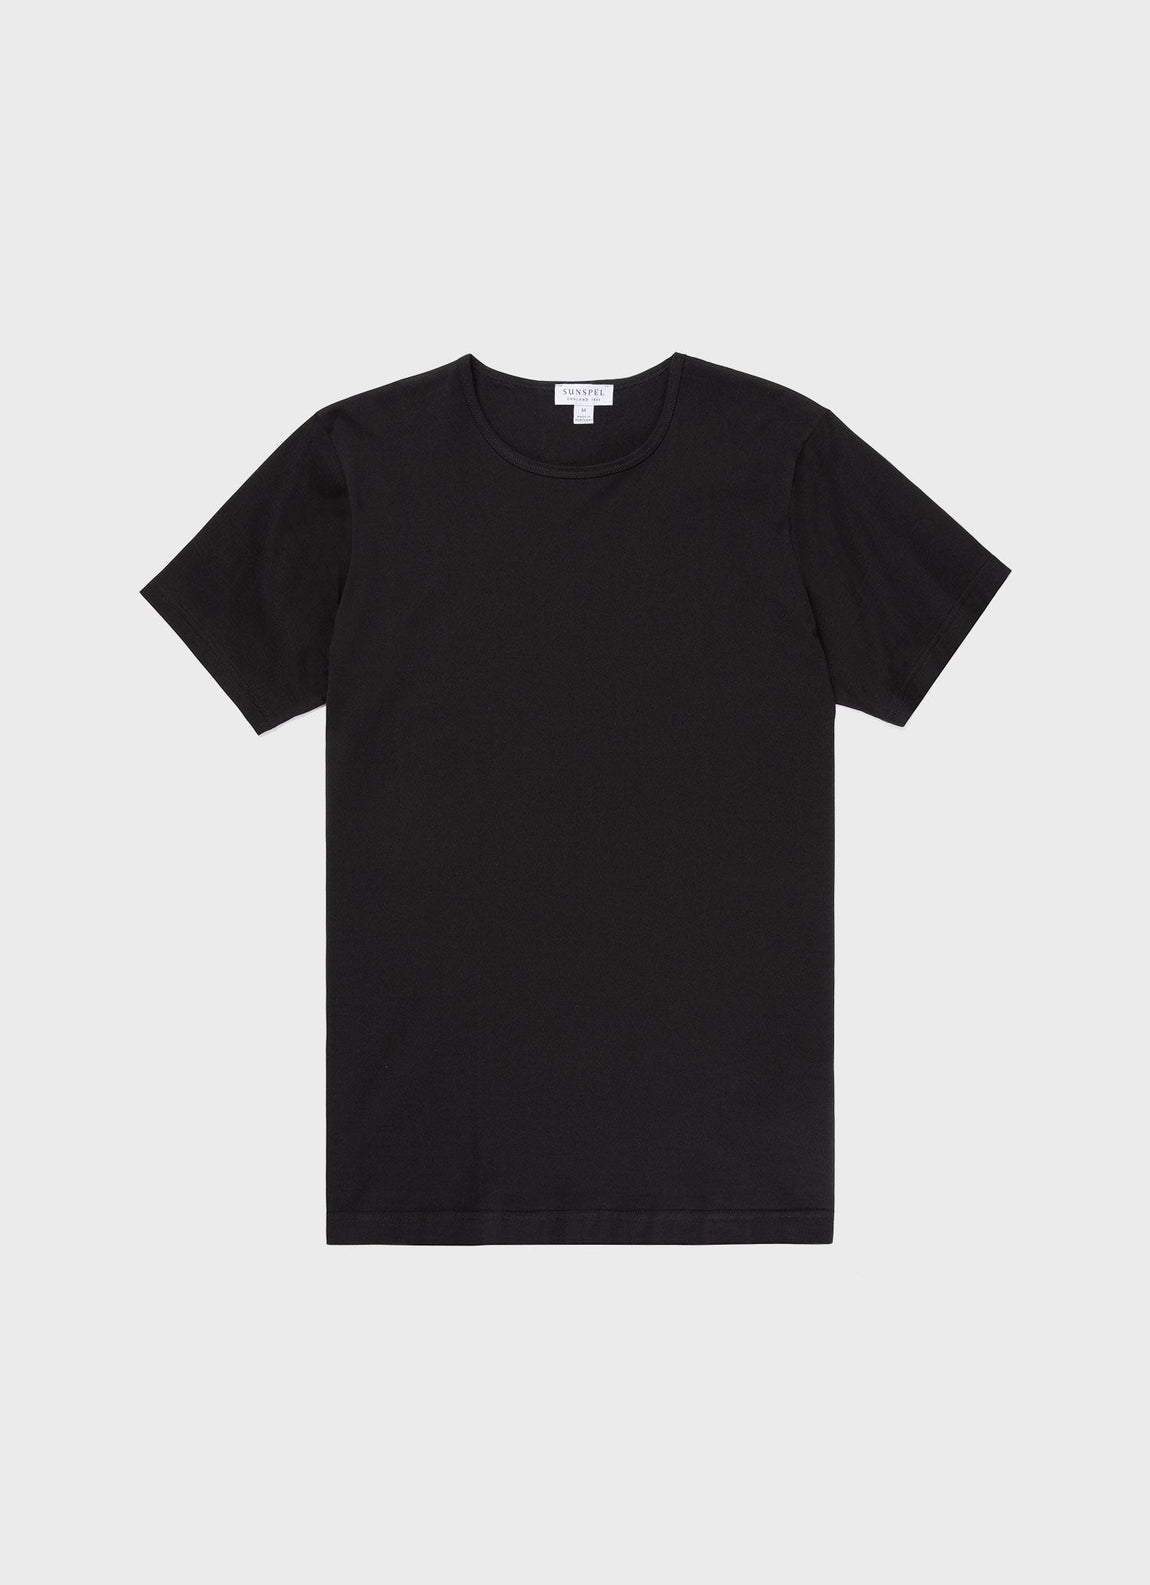 Men's Superfine Cotton Underwear T-shirt in Black | Sunspel